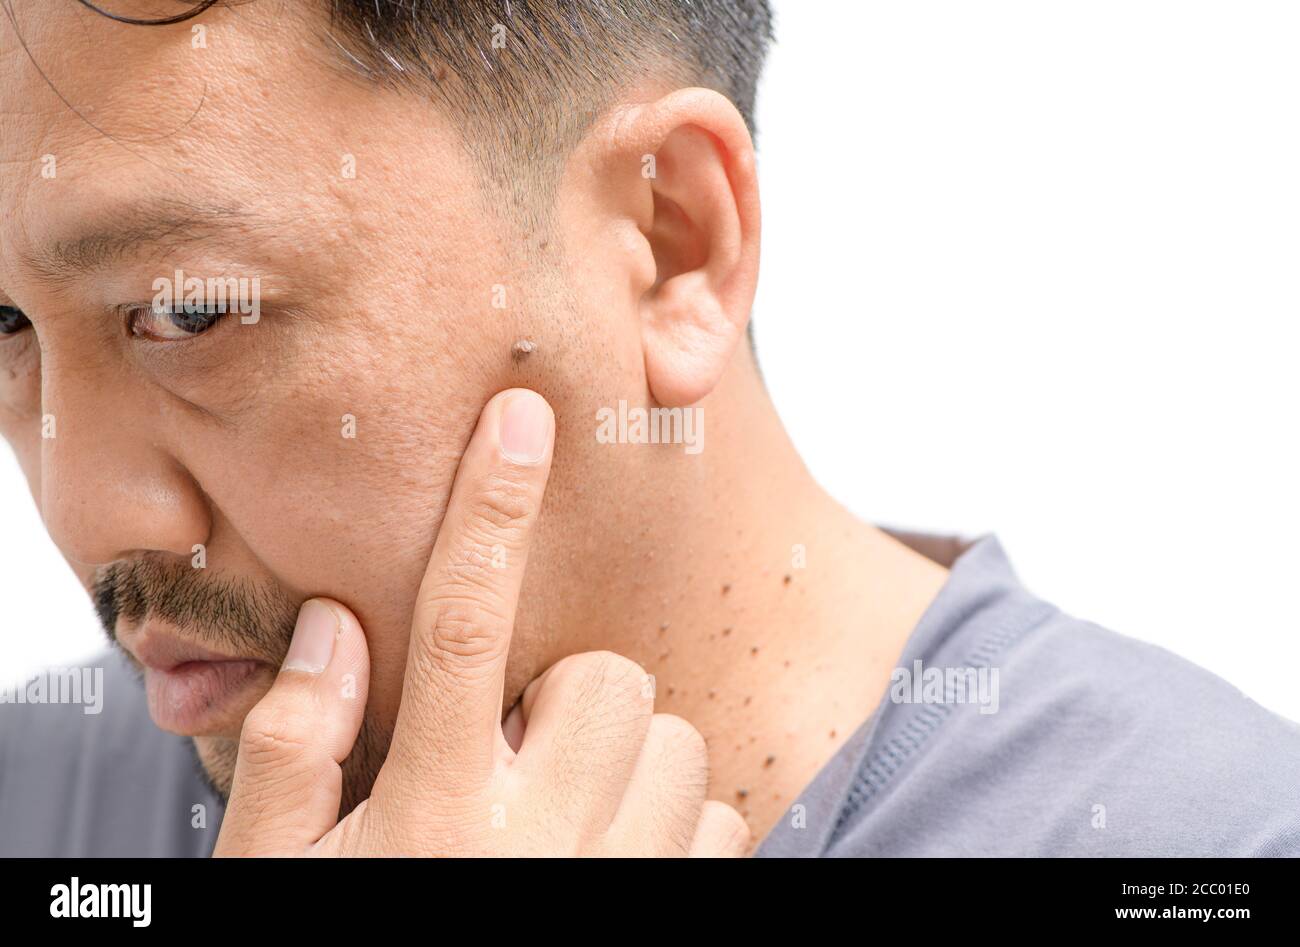 Homme asiatique d'âge moyen s'inquiète des grandes étiquettes de peau ou Acrochordon sur le visage isolé sur fond blanc, concept de soins de santé Banque D'Images